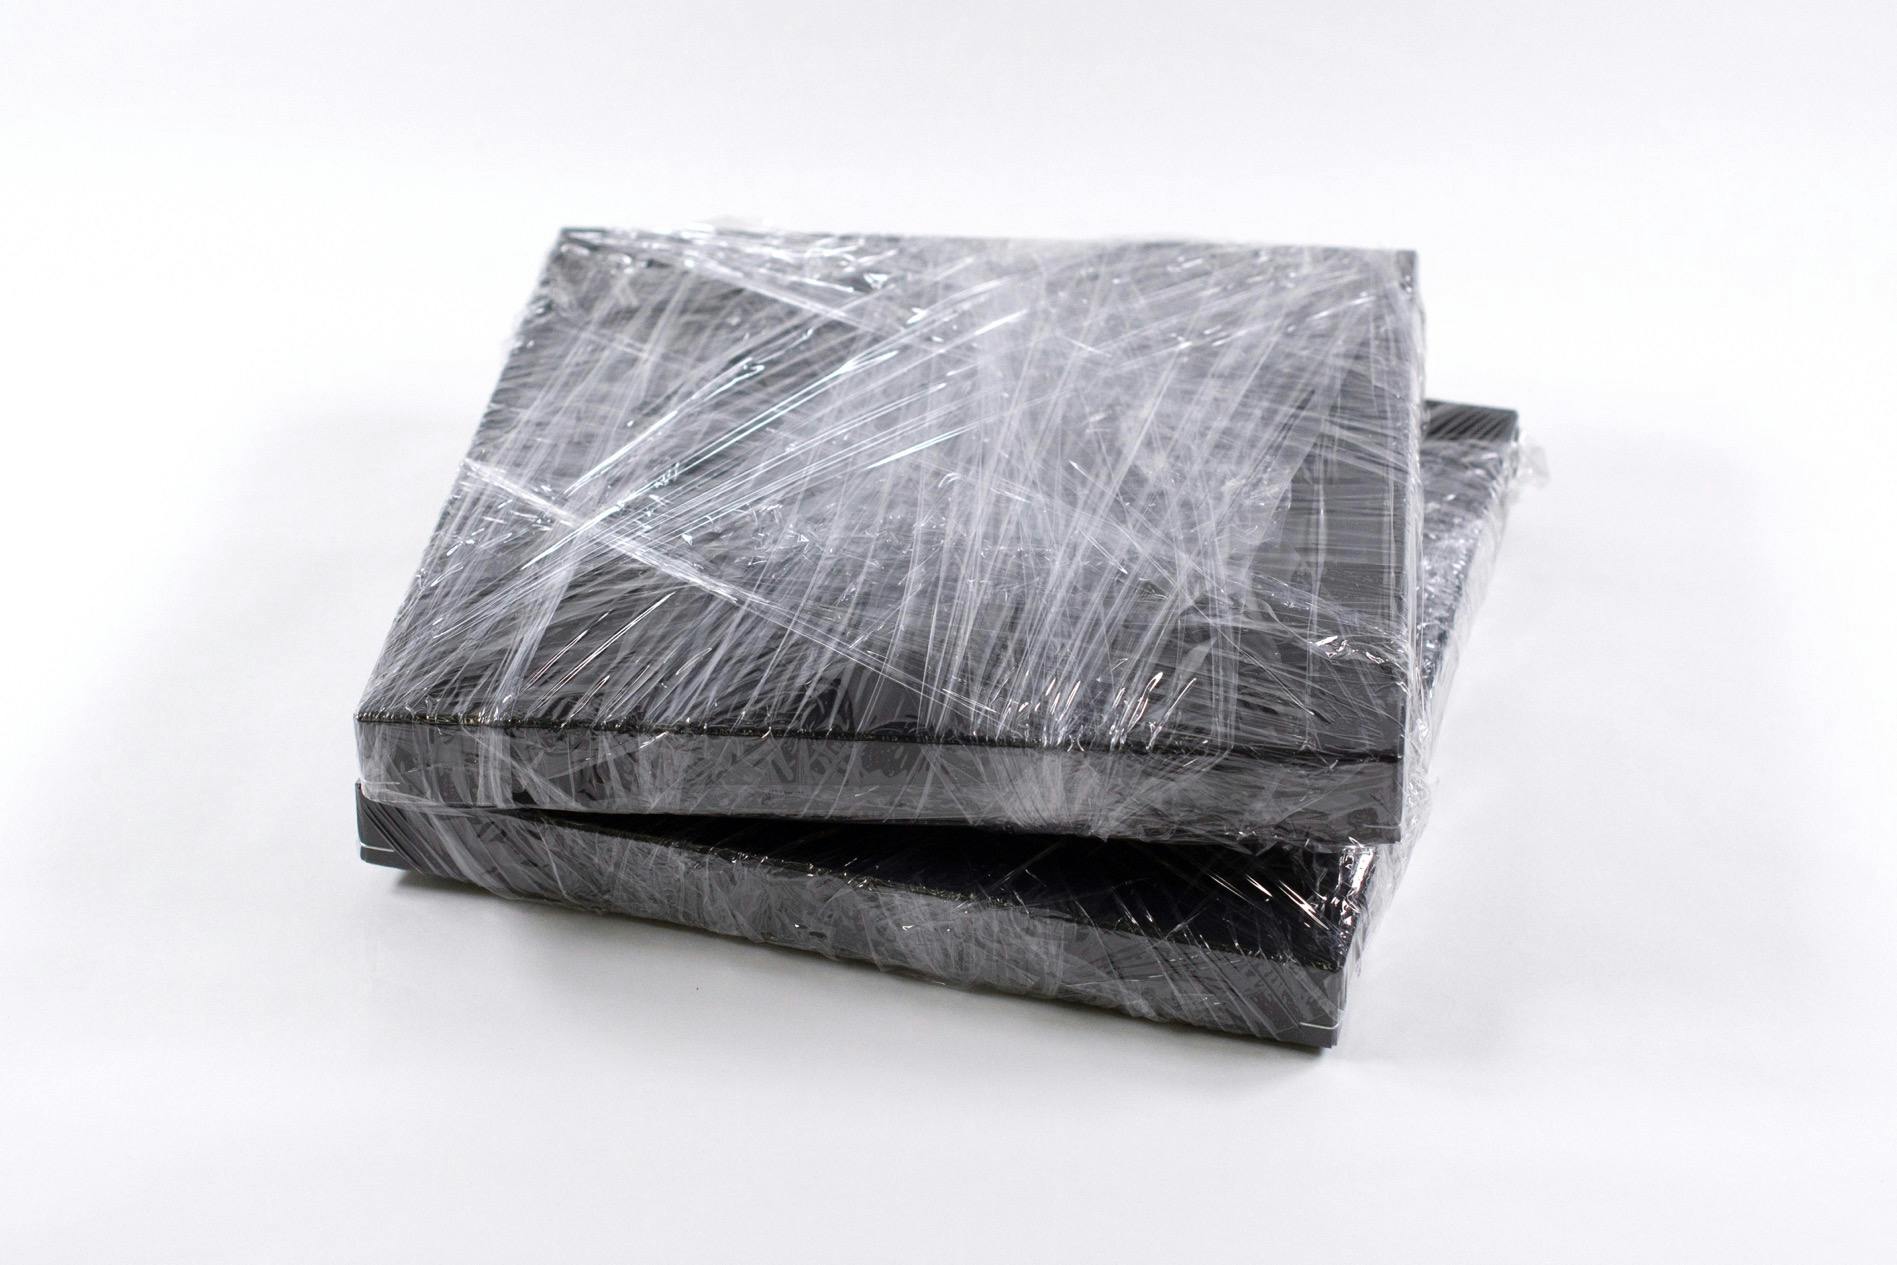 小松浩子作品《Wrap》と共通するラップ梱包(見本画像)